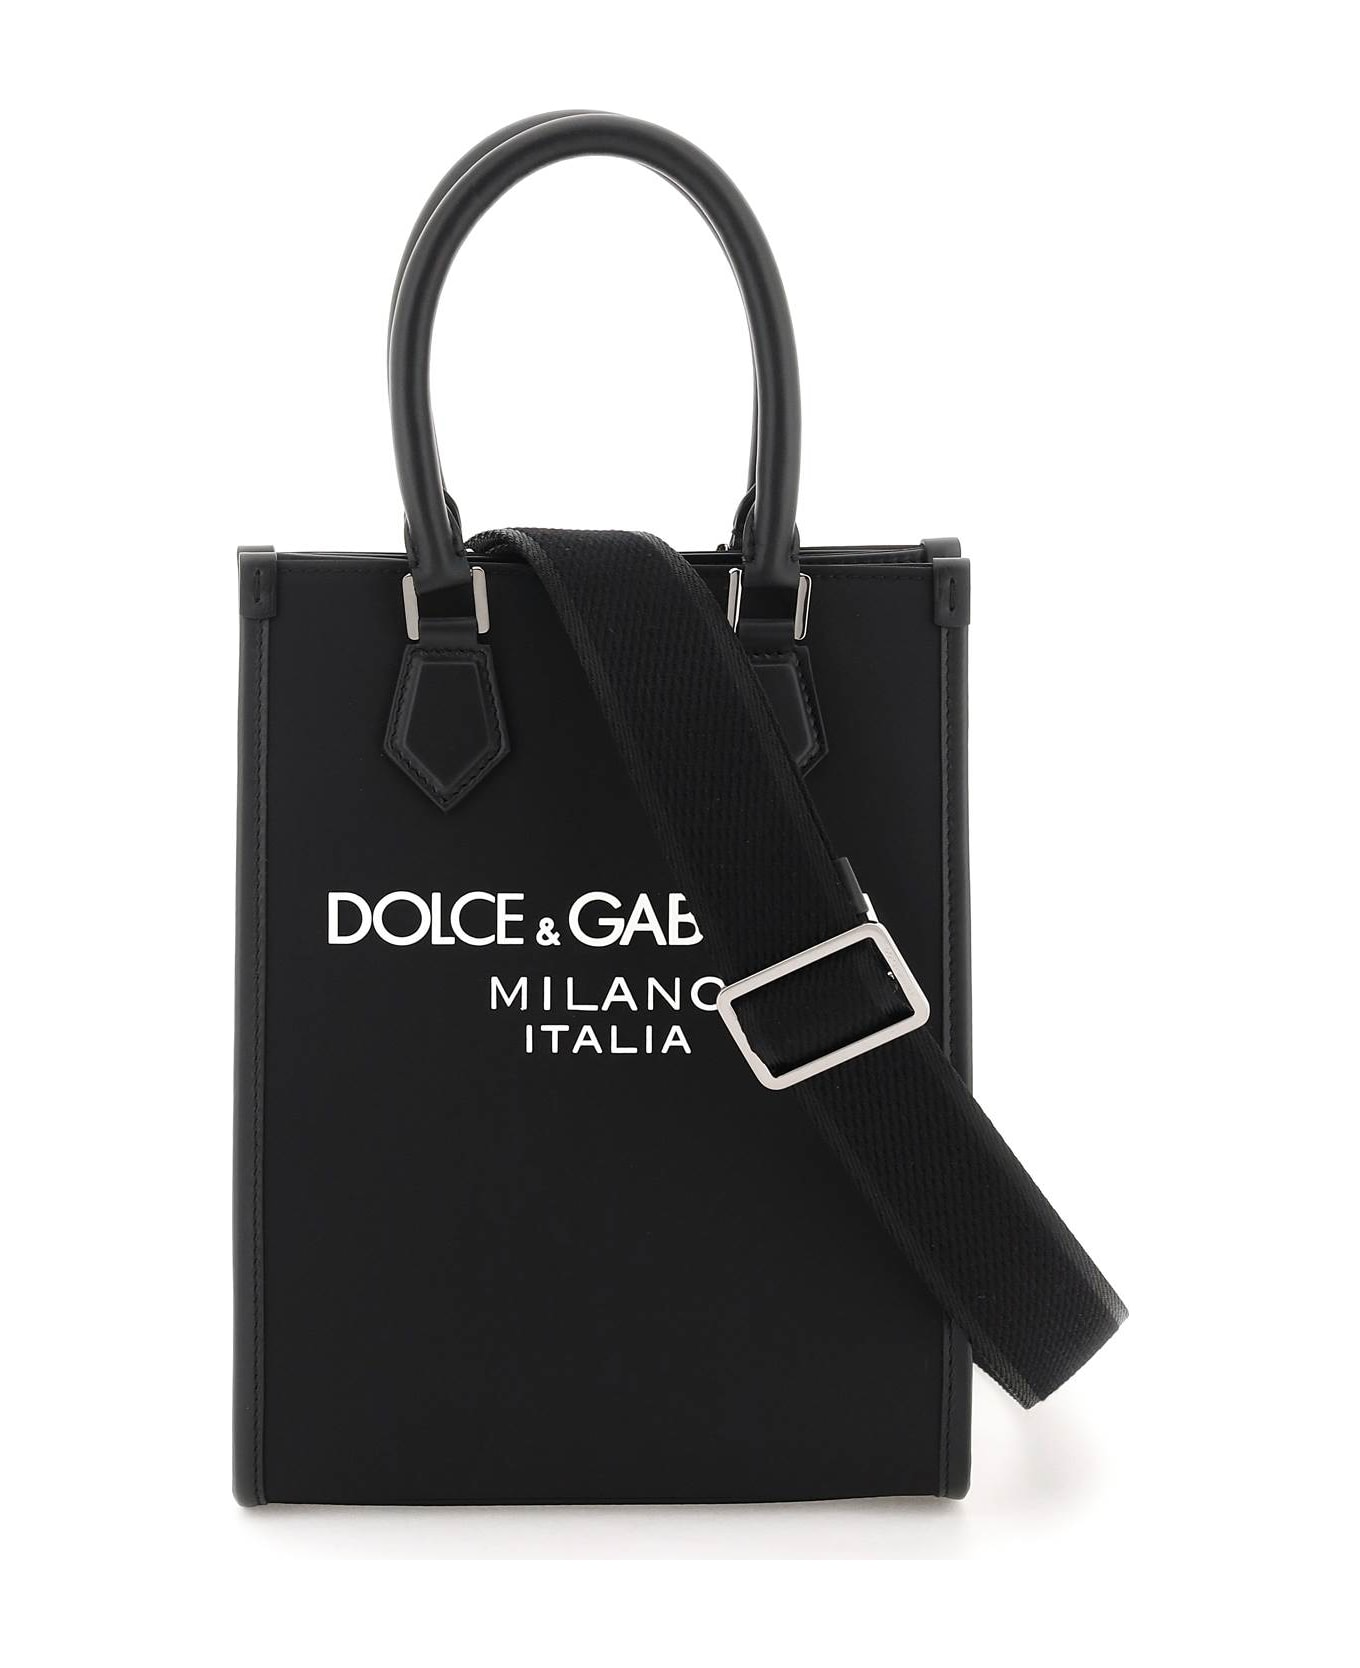 Dolce & Gabbana Small Nylon Tote Bag With Logo - Nero/nero